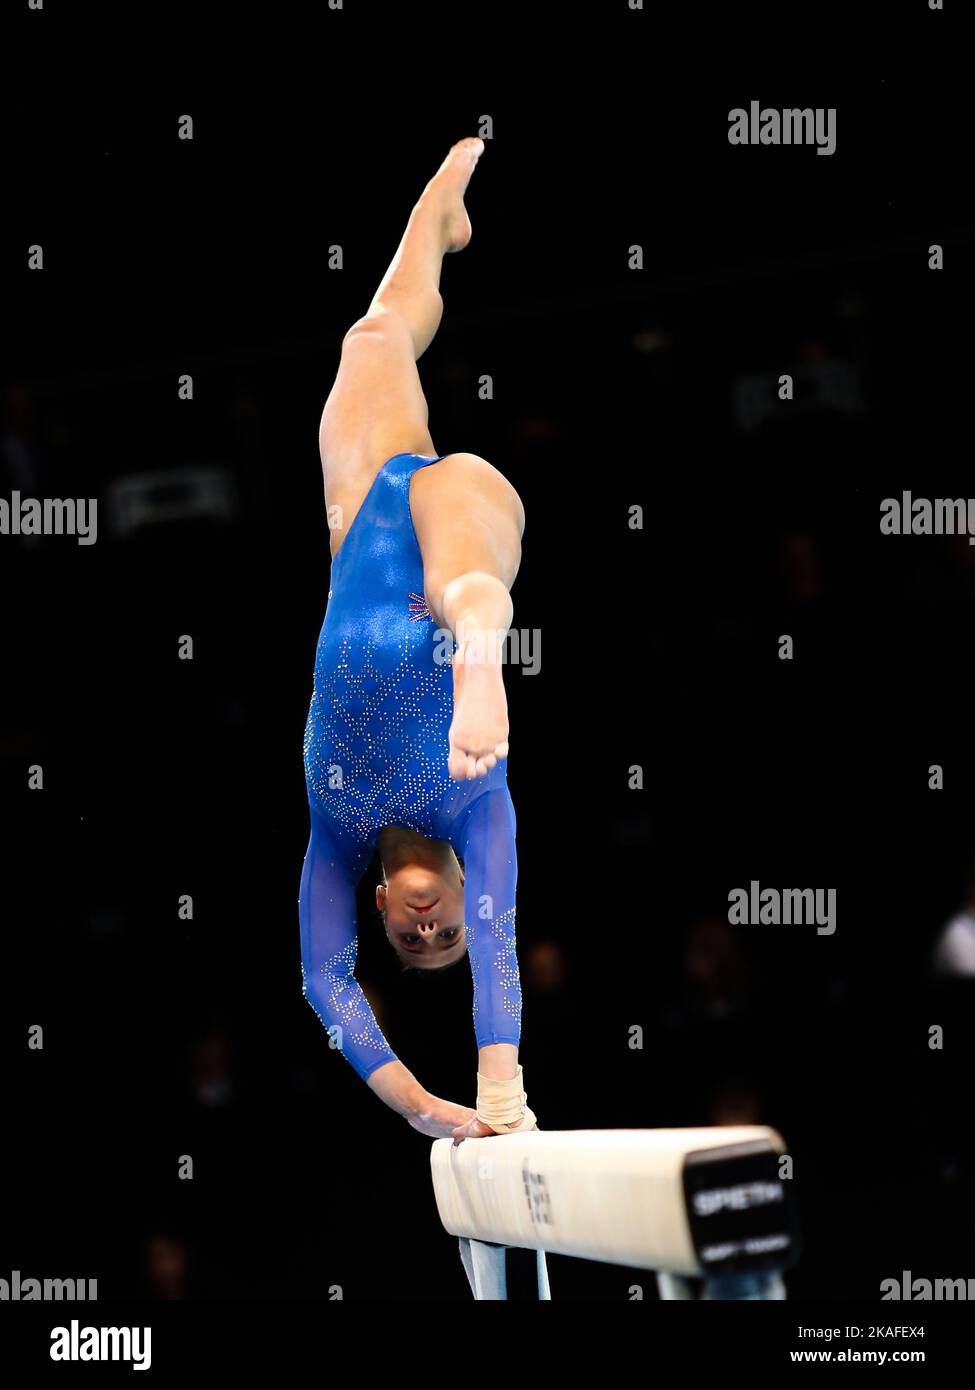 Szczecin, Pologne, 11 avril 2019: L'athlète britannique Amelie Morgan se livre sur le balancier lors des championnats de gymnastique artistique Banque D'Images